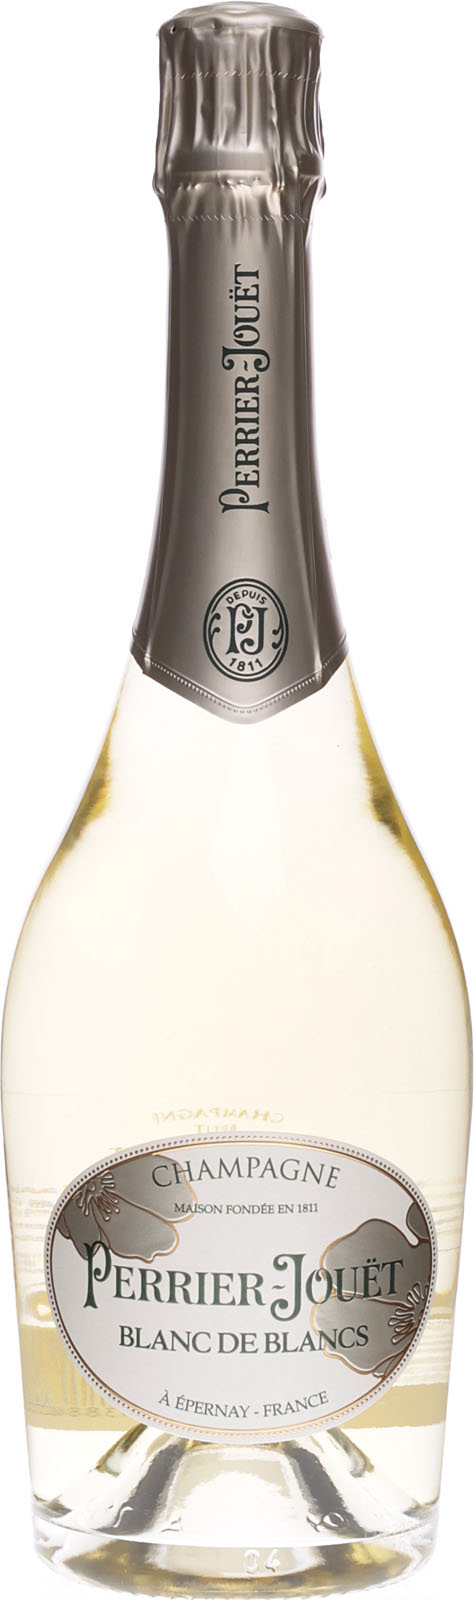 Пару постеров старой рекламы алкоголя. Шампанское Perrier-Jouët История,Алкоголь,Вино,Реклама